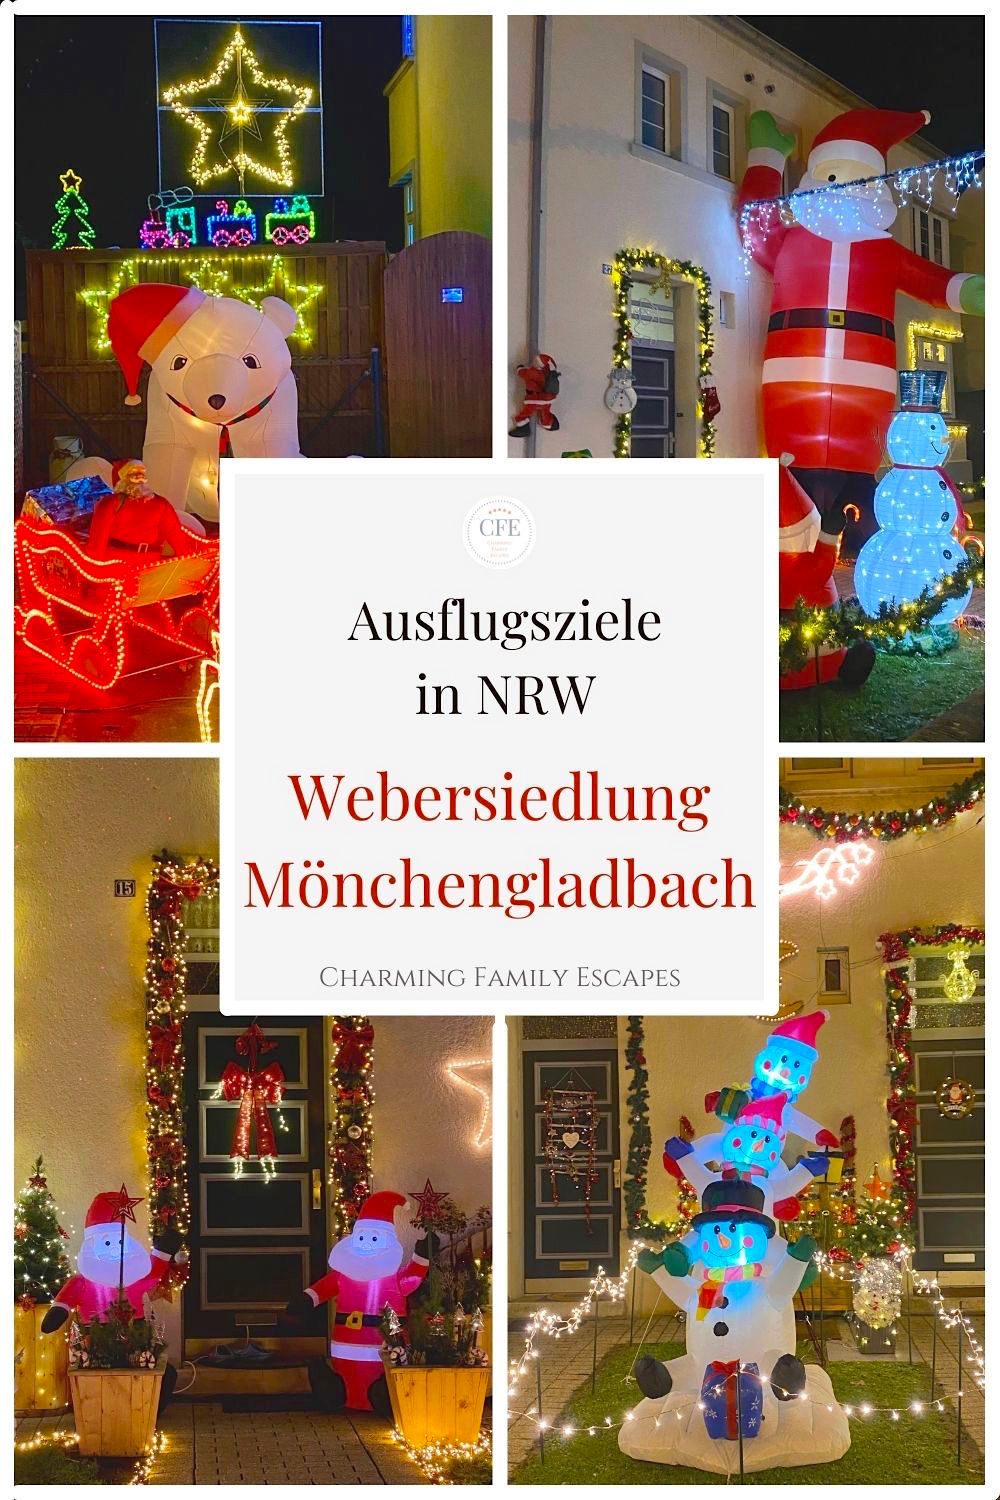 Webersiedlung Mönchengladbach zu Weihnachten auf Charming Family Escapes